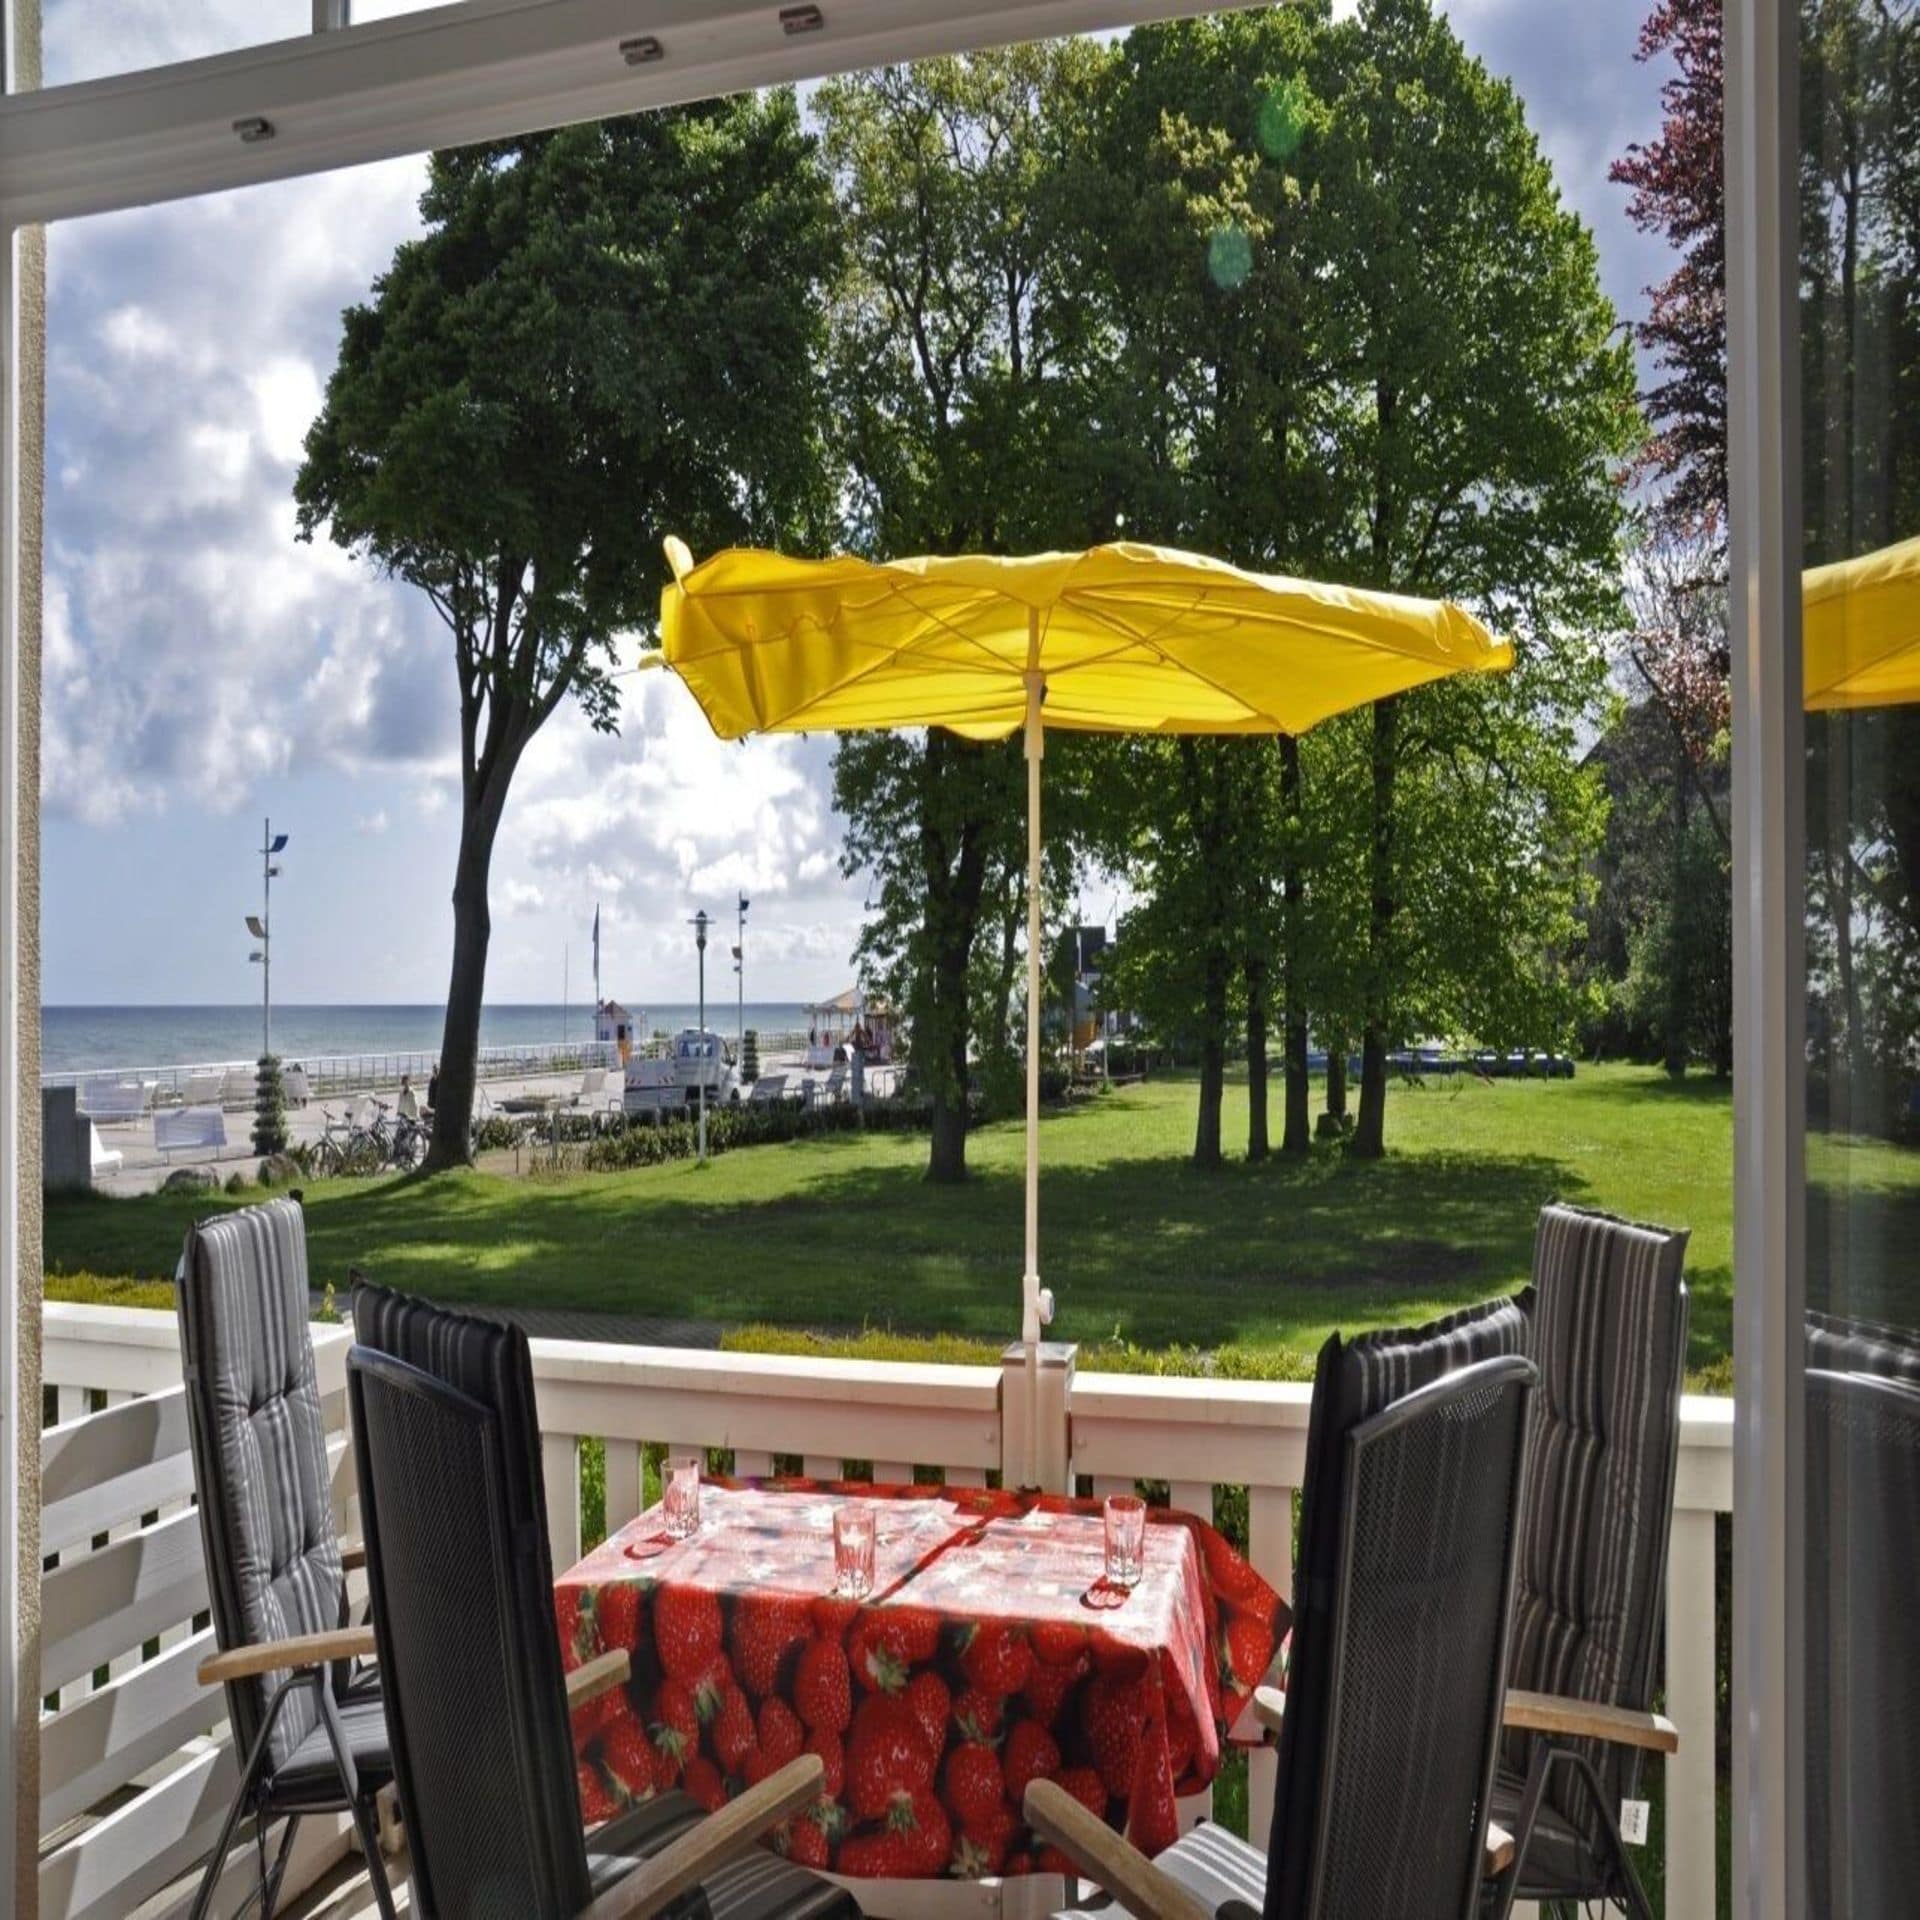 Terrasse mit 4 Stühlen, Tisch und gelbem Sonnenschirm. Blick auf eine Wiese und die Ostsee.